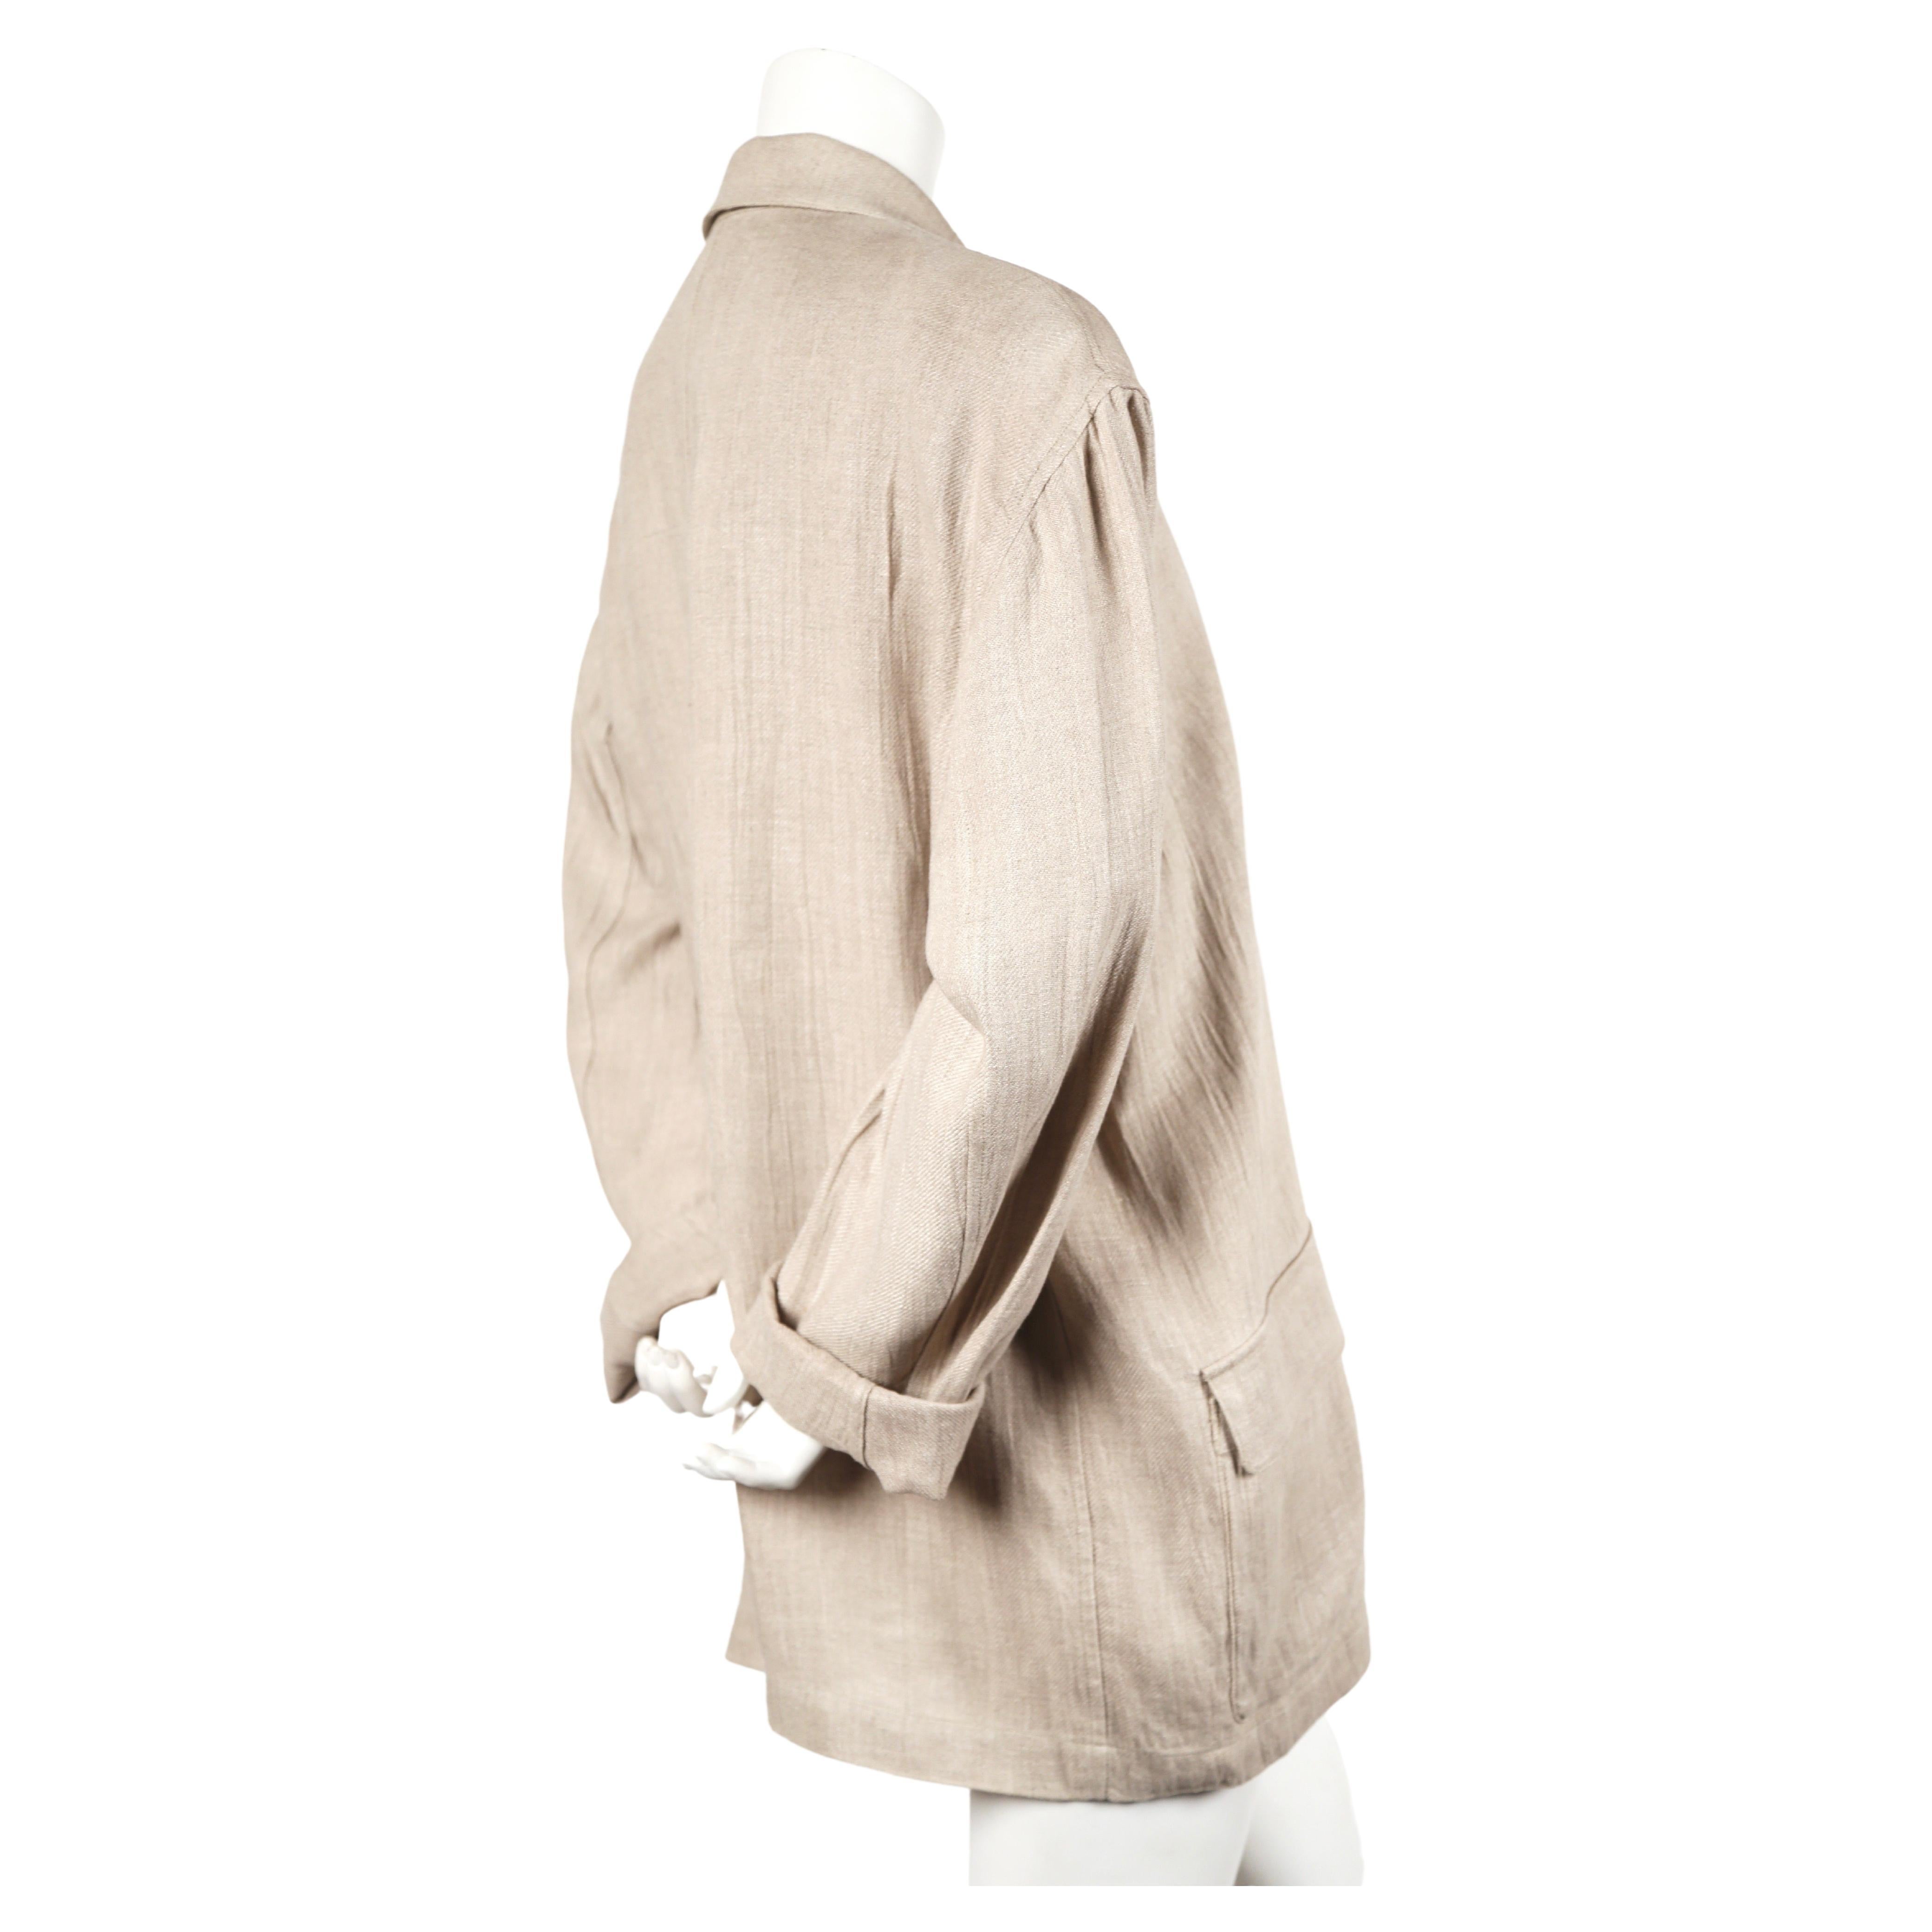 Veste oversize en lin, couleur lin, avec boutons en tissu noué, conçue par Issey Miyake pour Plantation, datant des années 1980. La veste est étiquetée en taille 'M' mais elle est trop grande. Photographié sans décollement sur un mannequin de taille